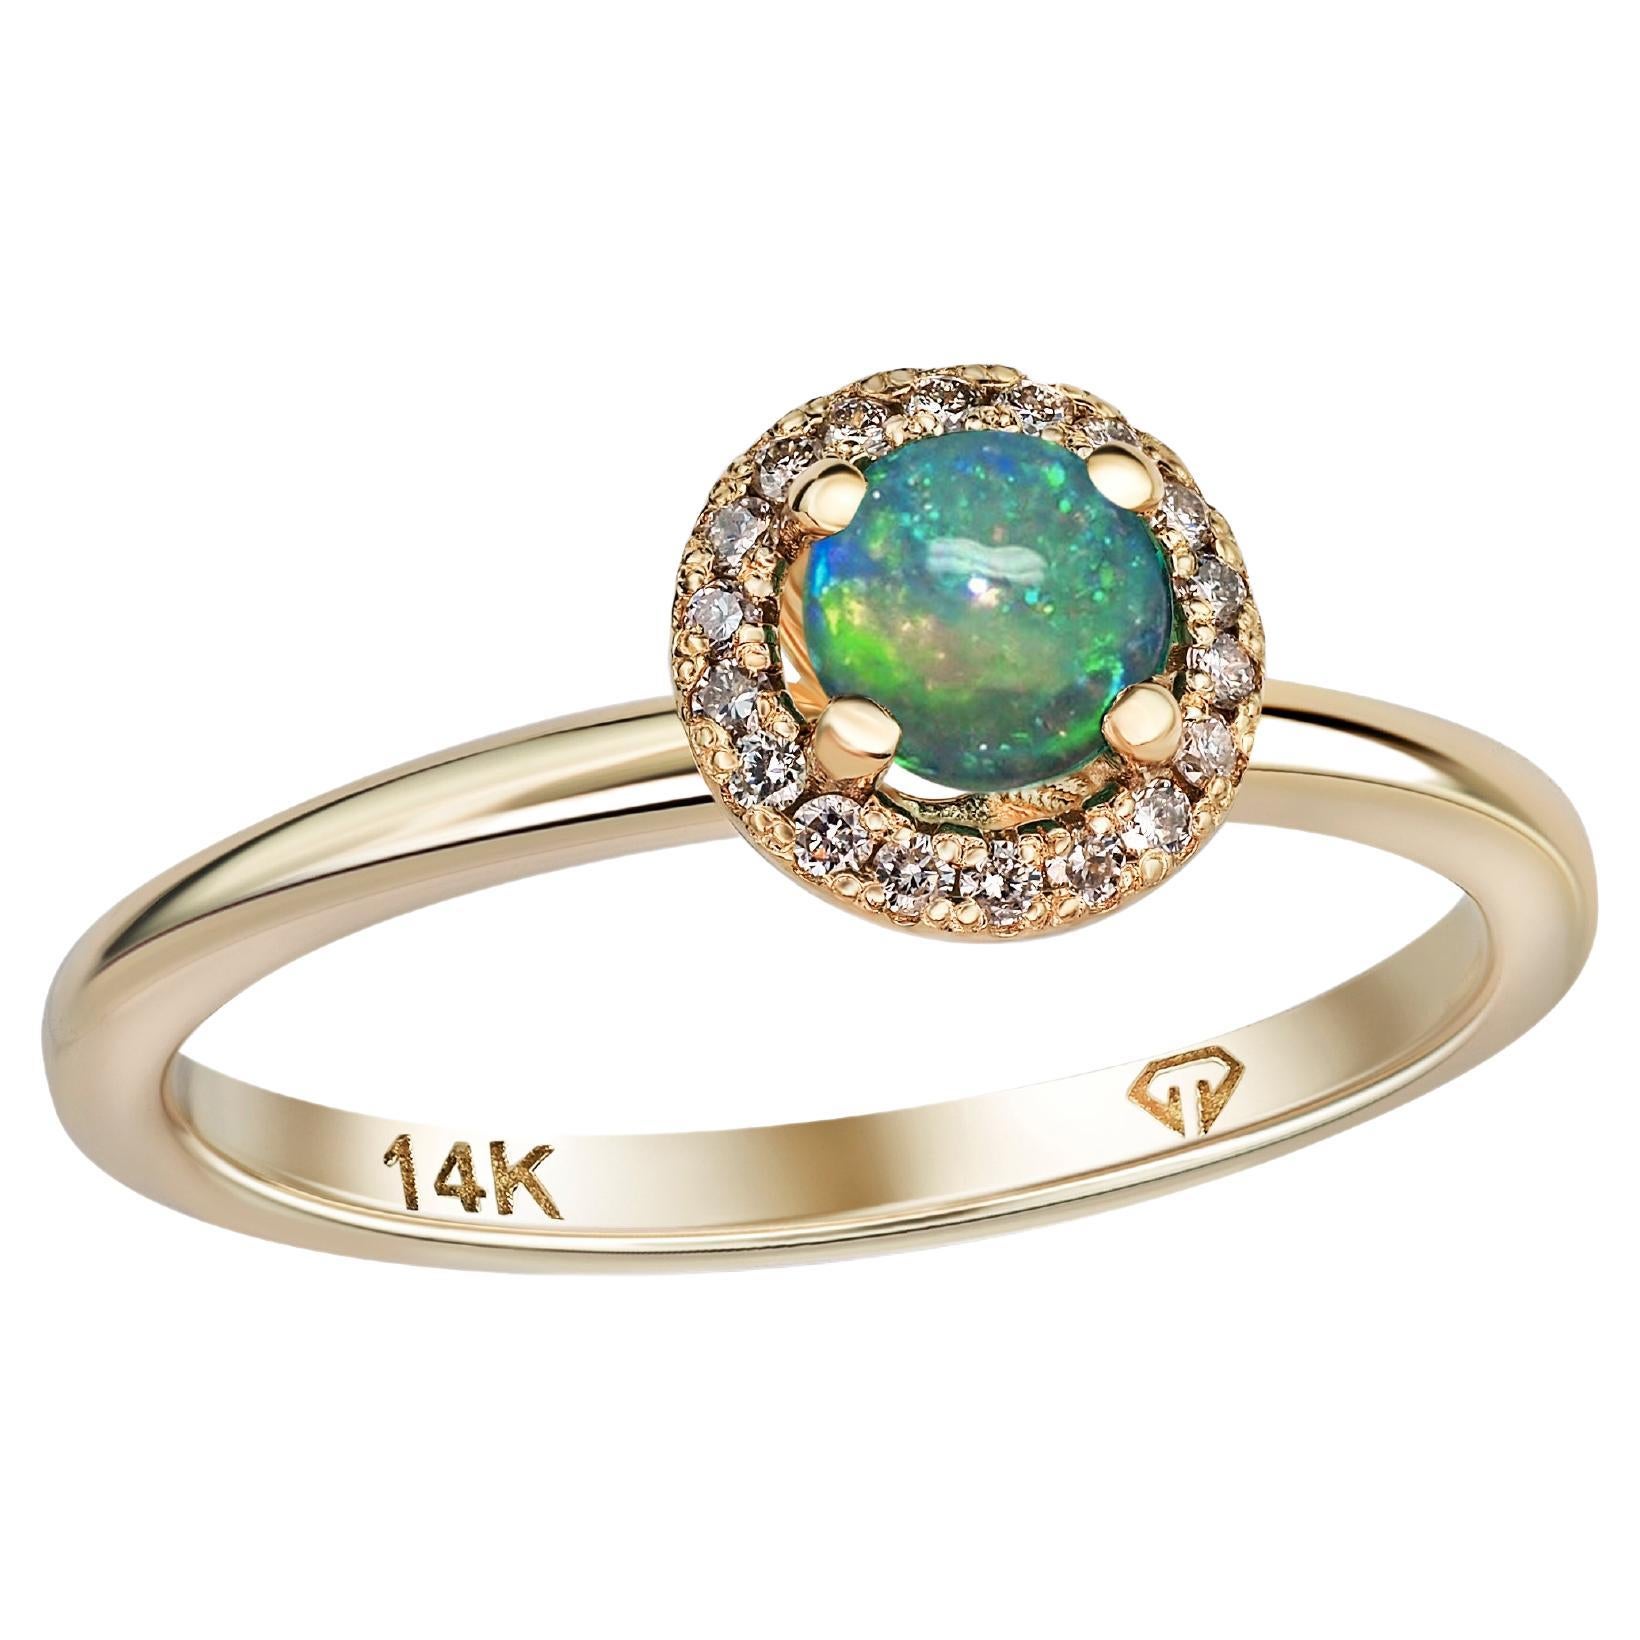 Bague en or 14k avec opale et diamants. Bague en or avec halo d'opale ronde !